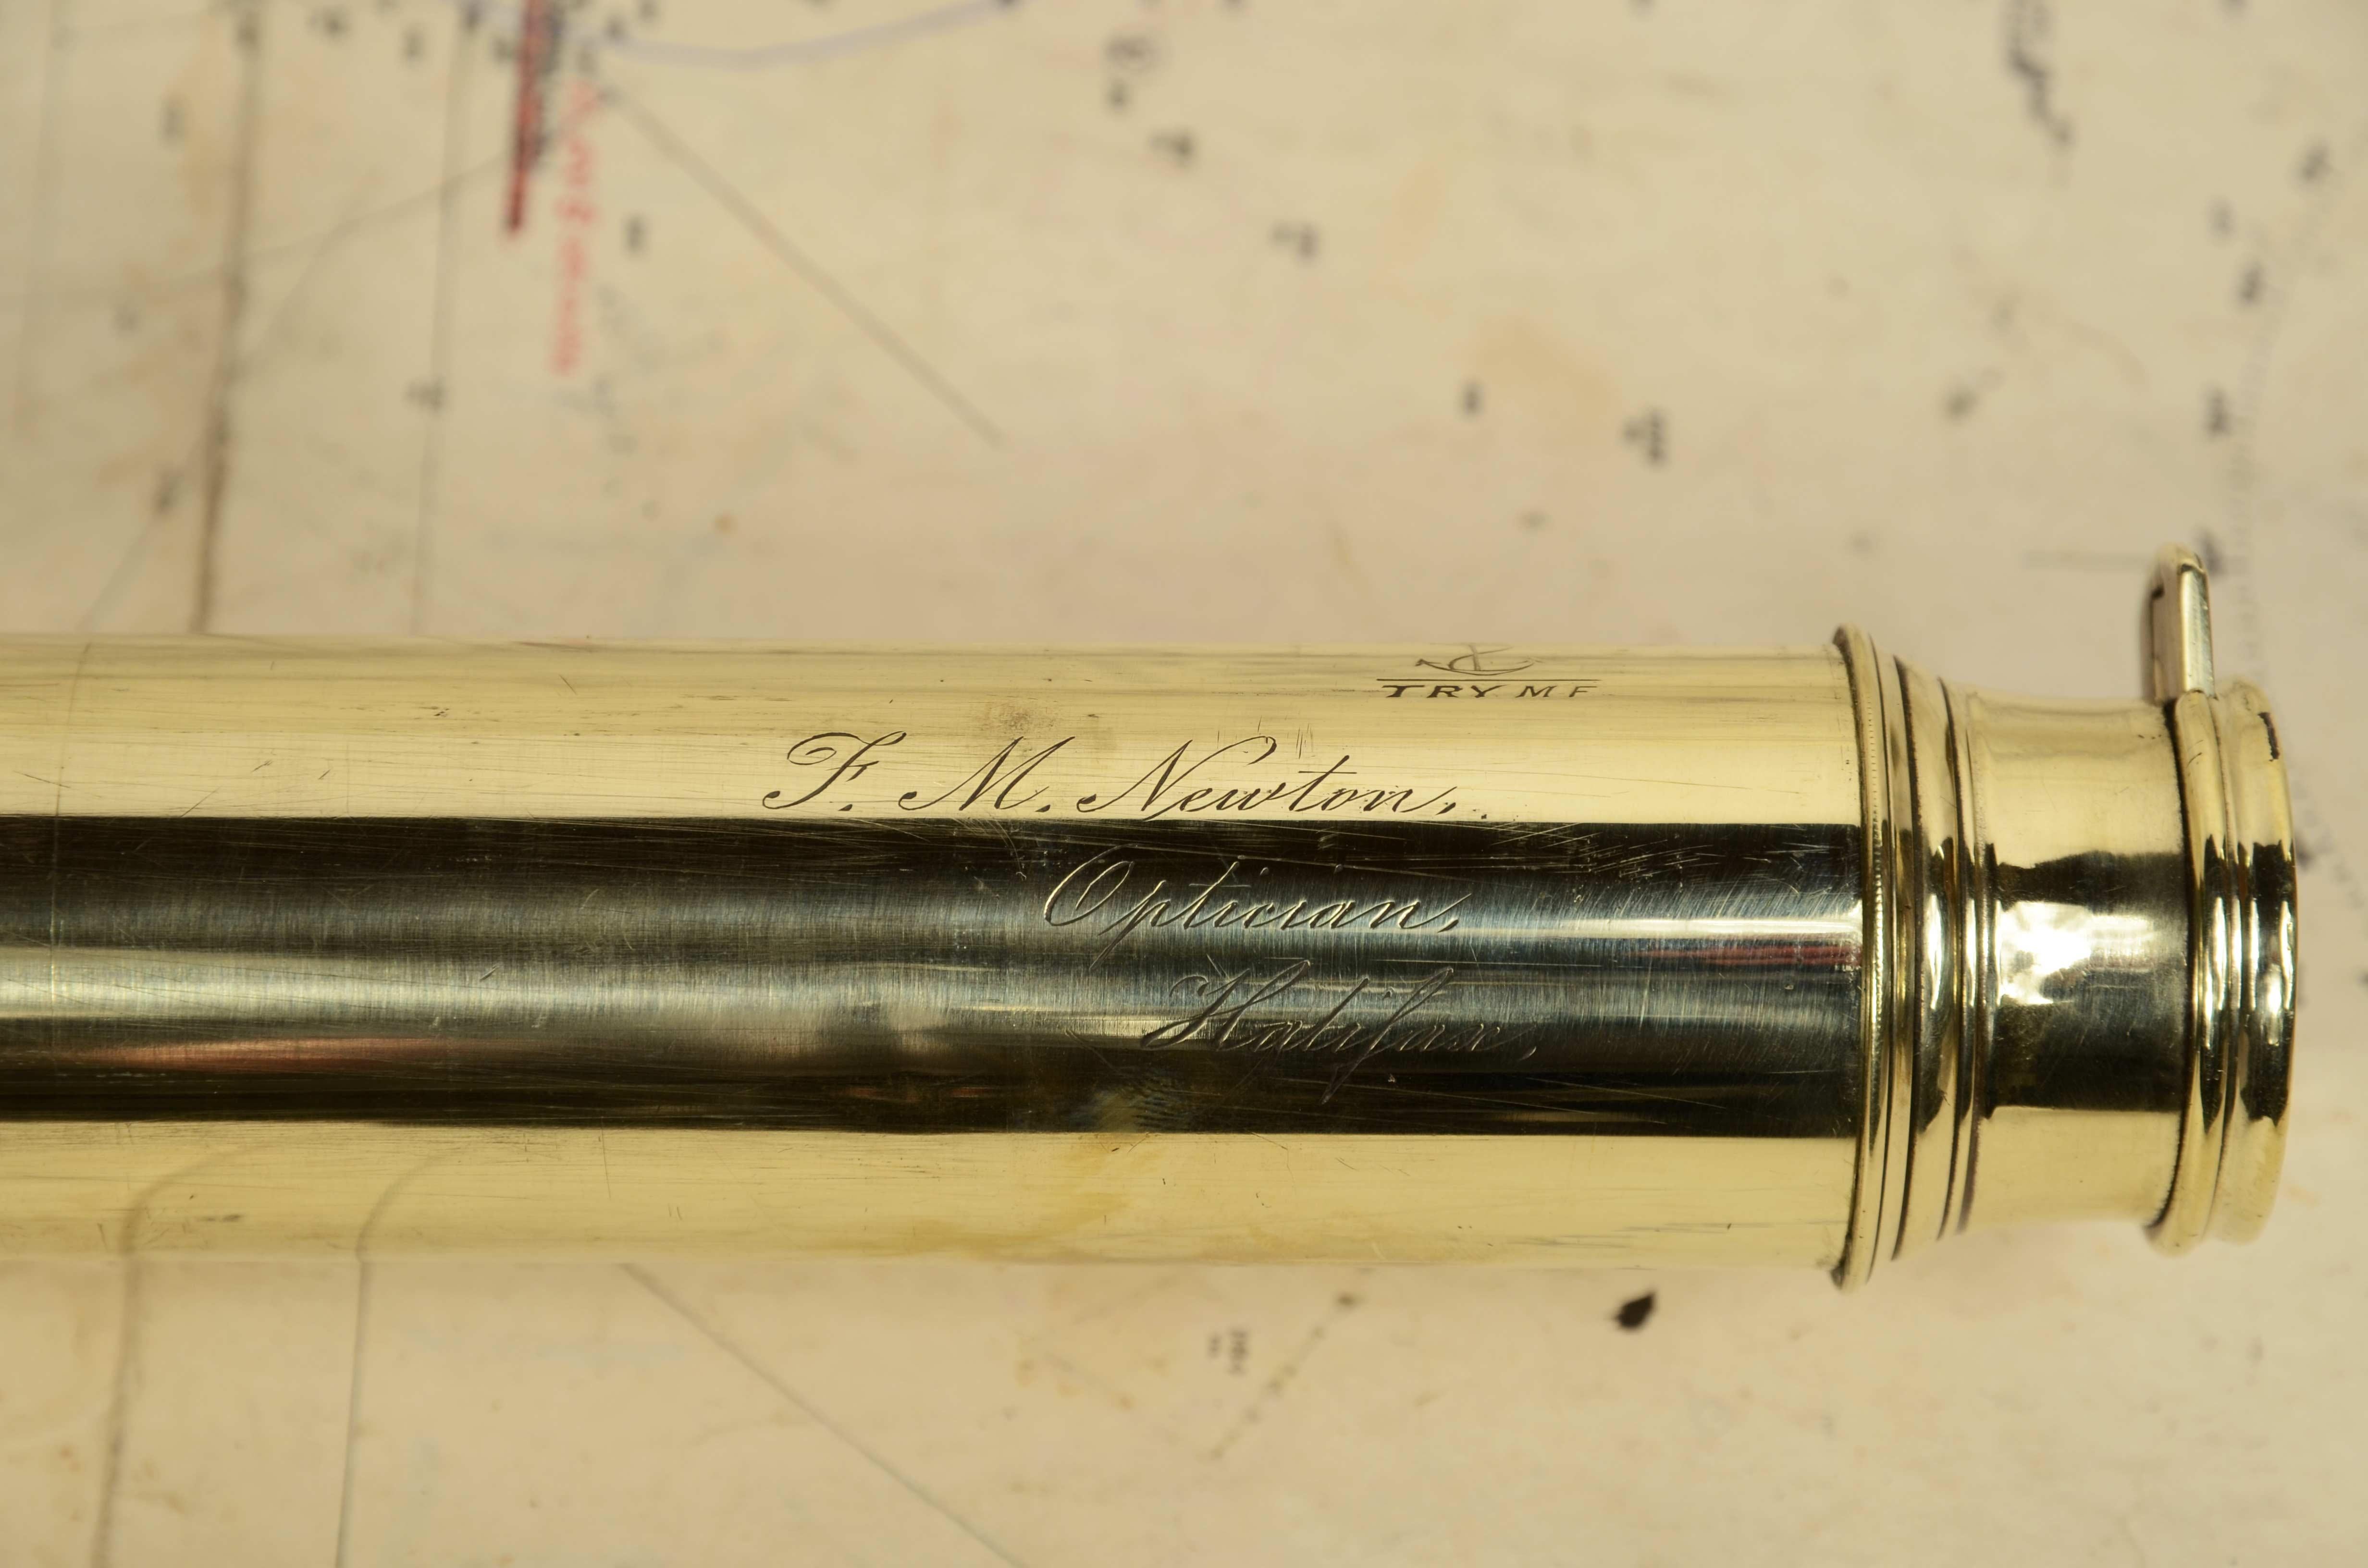 Teleskop aus Messing mit lederbezogenem Griff und dreifachem Fokus, signiert F.M. Newton Optiker Halifax von  zweiten Hälfte des 19. Jahrhunderts. Maximale Länge 87,5 cm, Zoll 34,4 minimale cm 30,- Zoll 11,7 Fokusdurchmesser cm 4,5 - Zoll 1,8. Guter